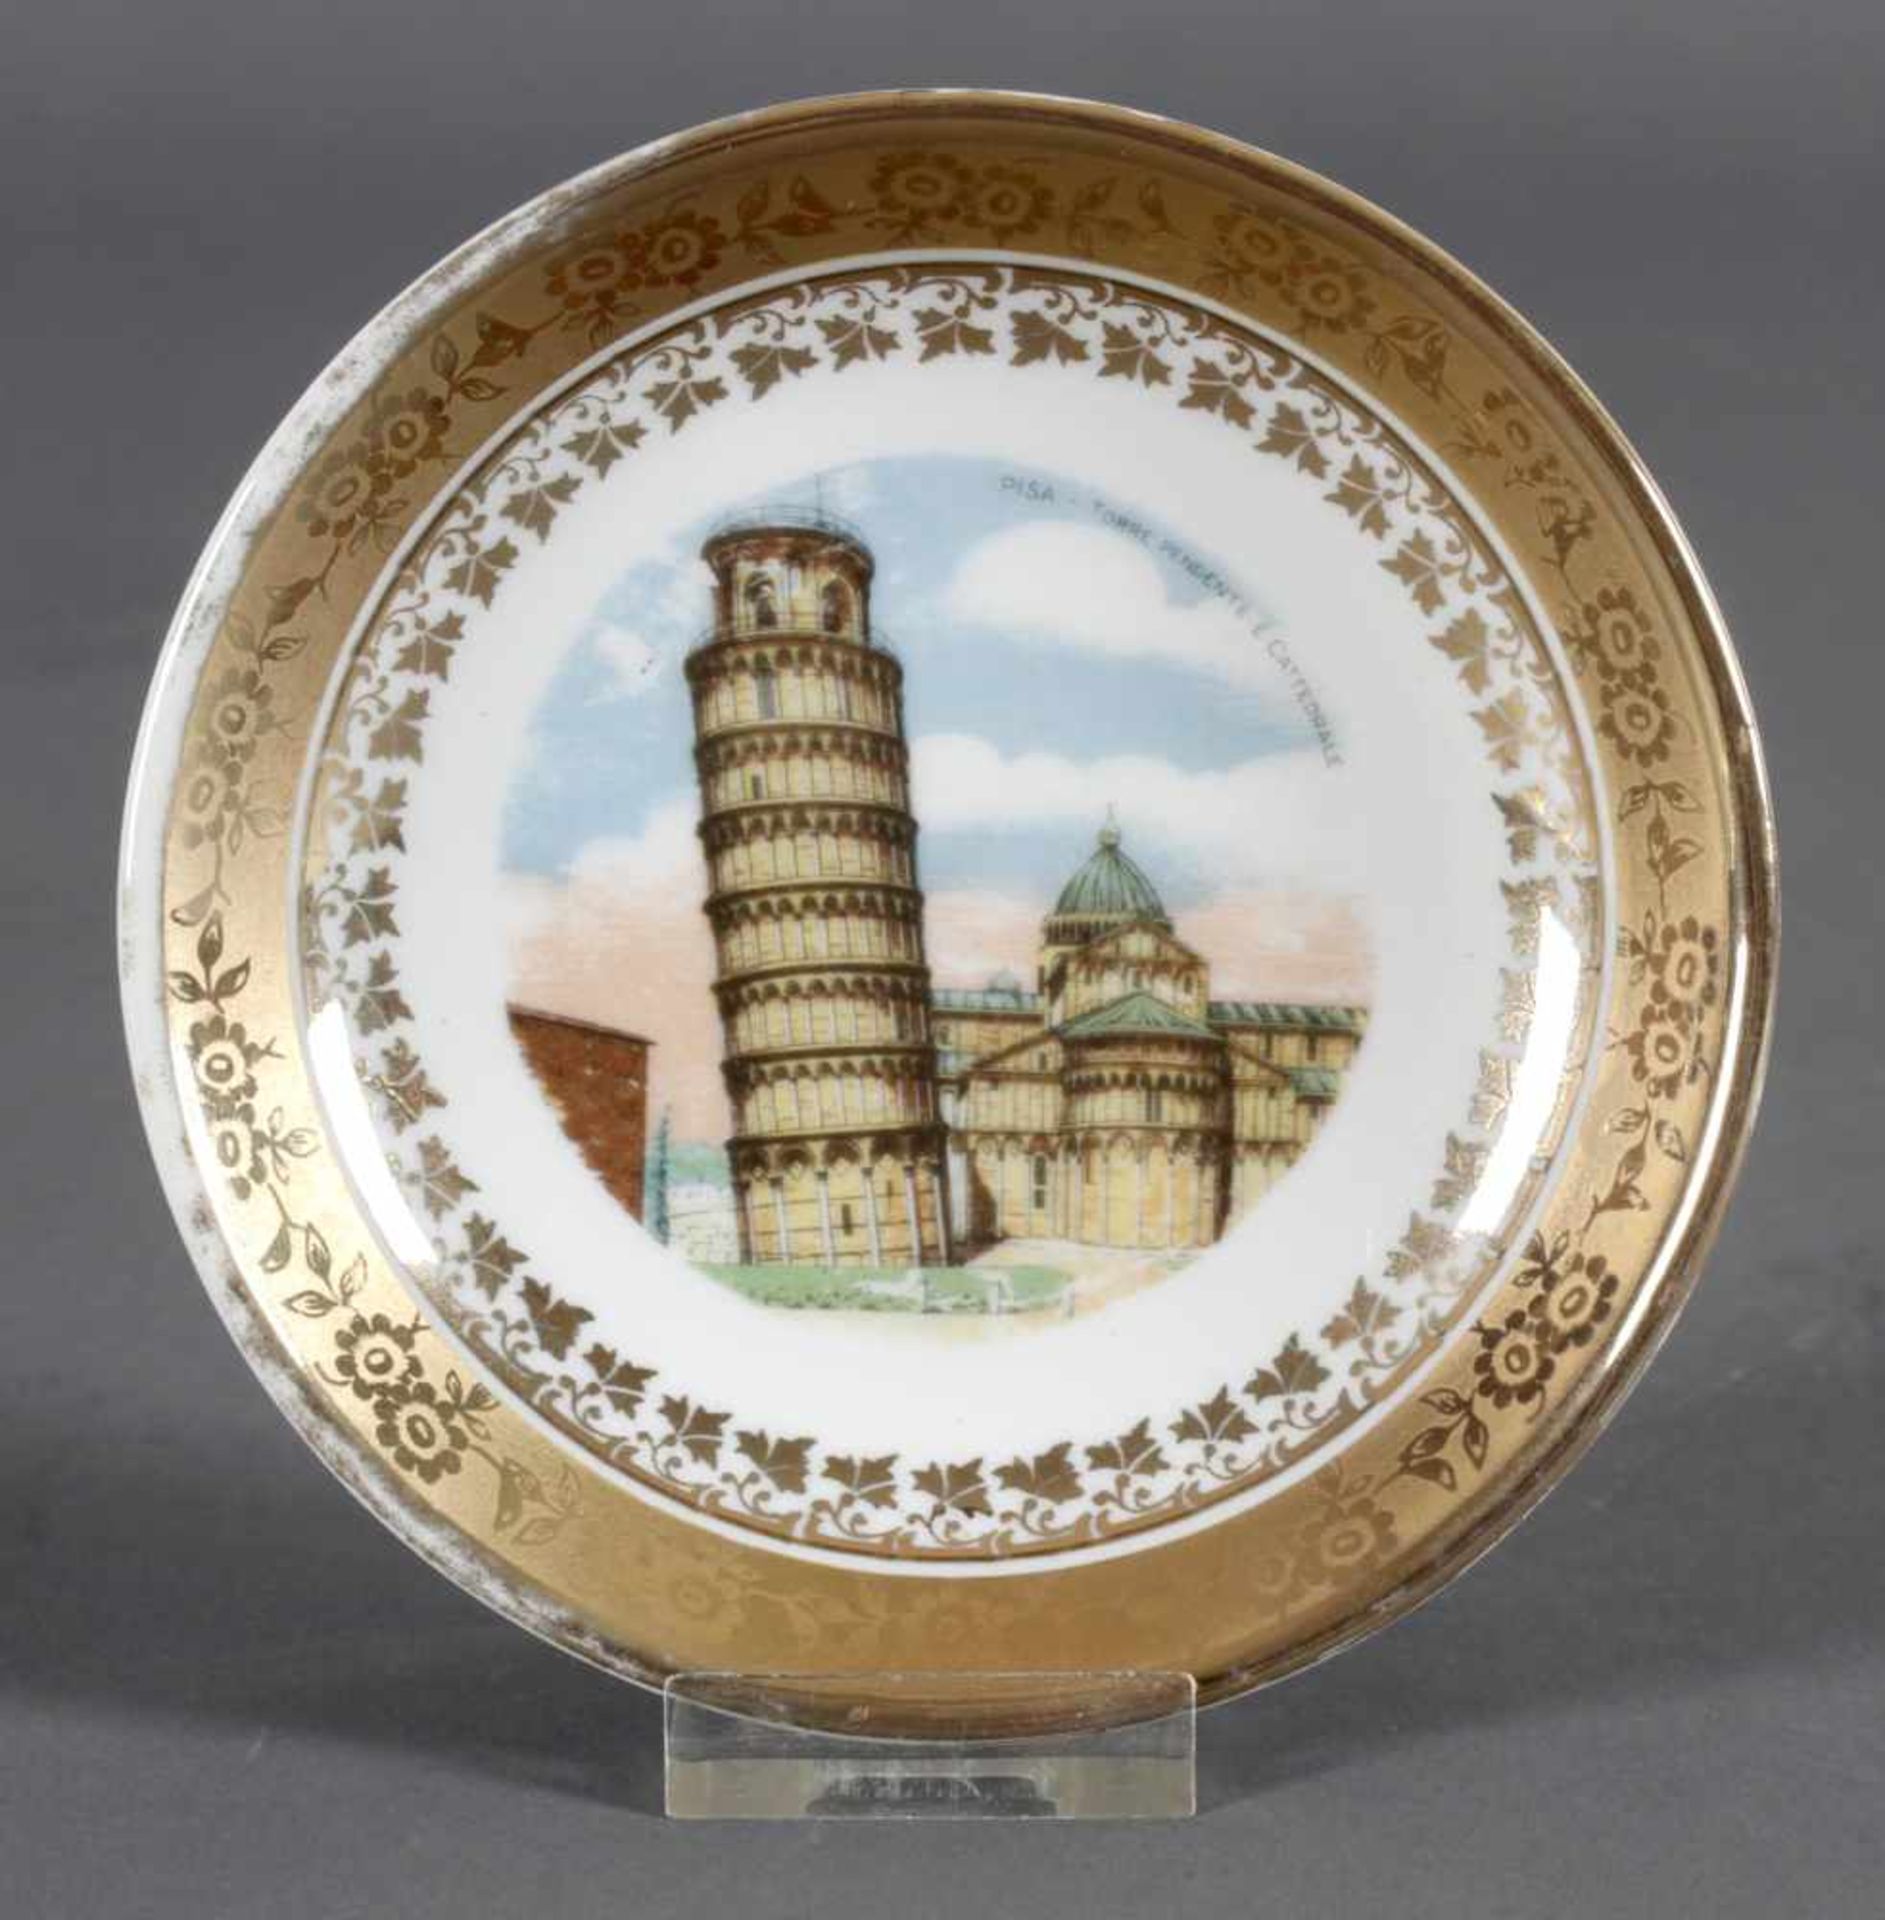 Pisa - Torre Pendente e Cattedrale, kleiner Teller aus Porzellan, um 1900